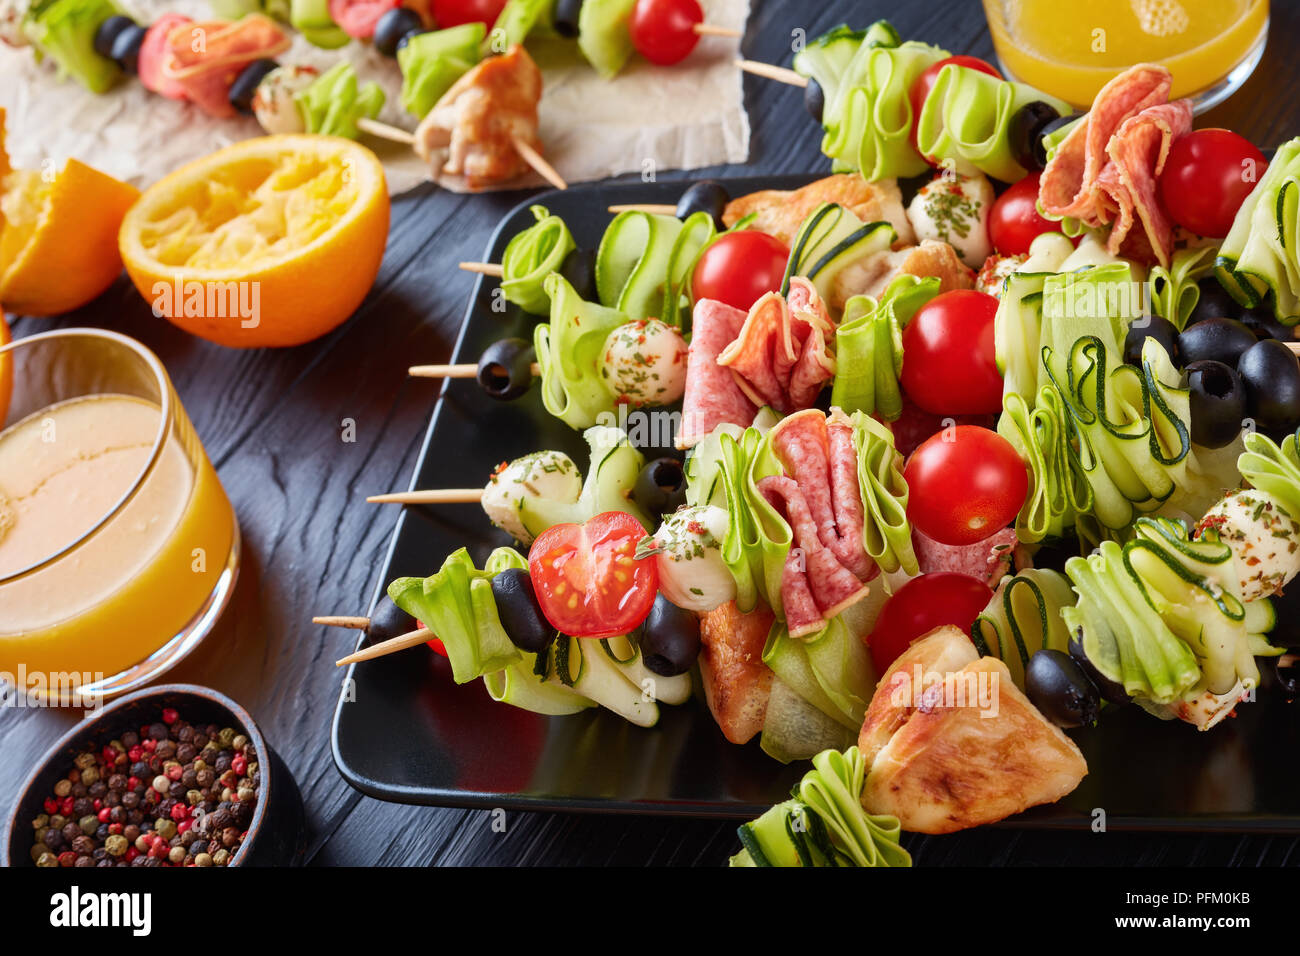 Spiesse mit Hähnchenfleisch, Zucchini, Tomaten, Mozzarella Kugeln, Scheiben  Salami, Oliven auf einer schwarzen Platte auf einem Holztisch mit  Orangensaft in Glas c Stockfotografie - Alamy